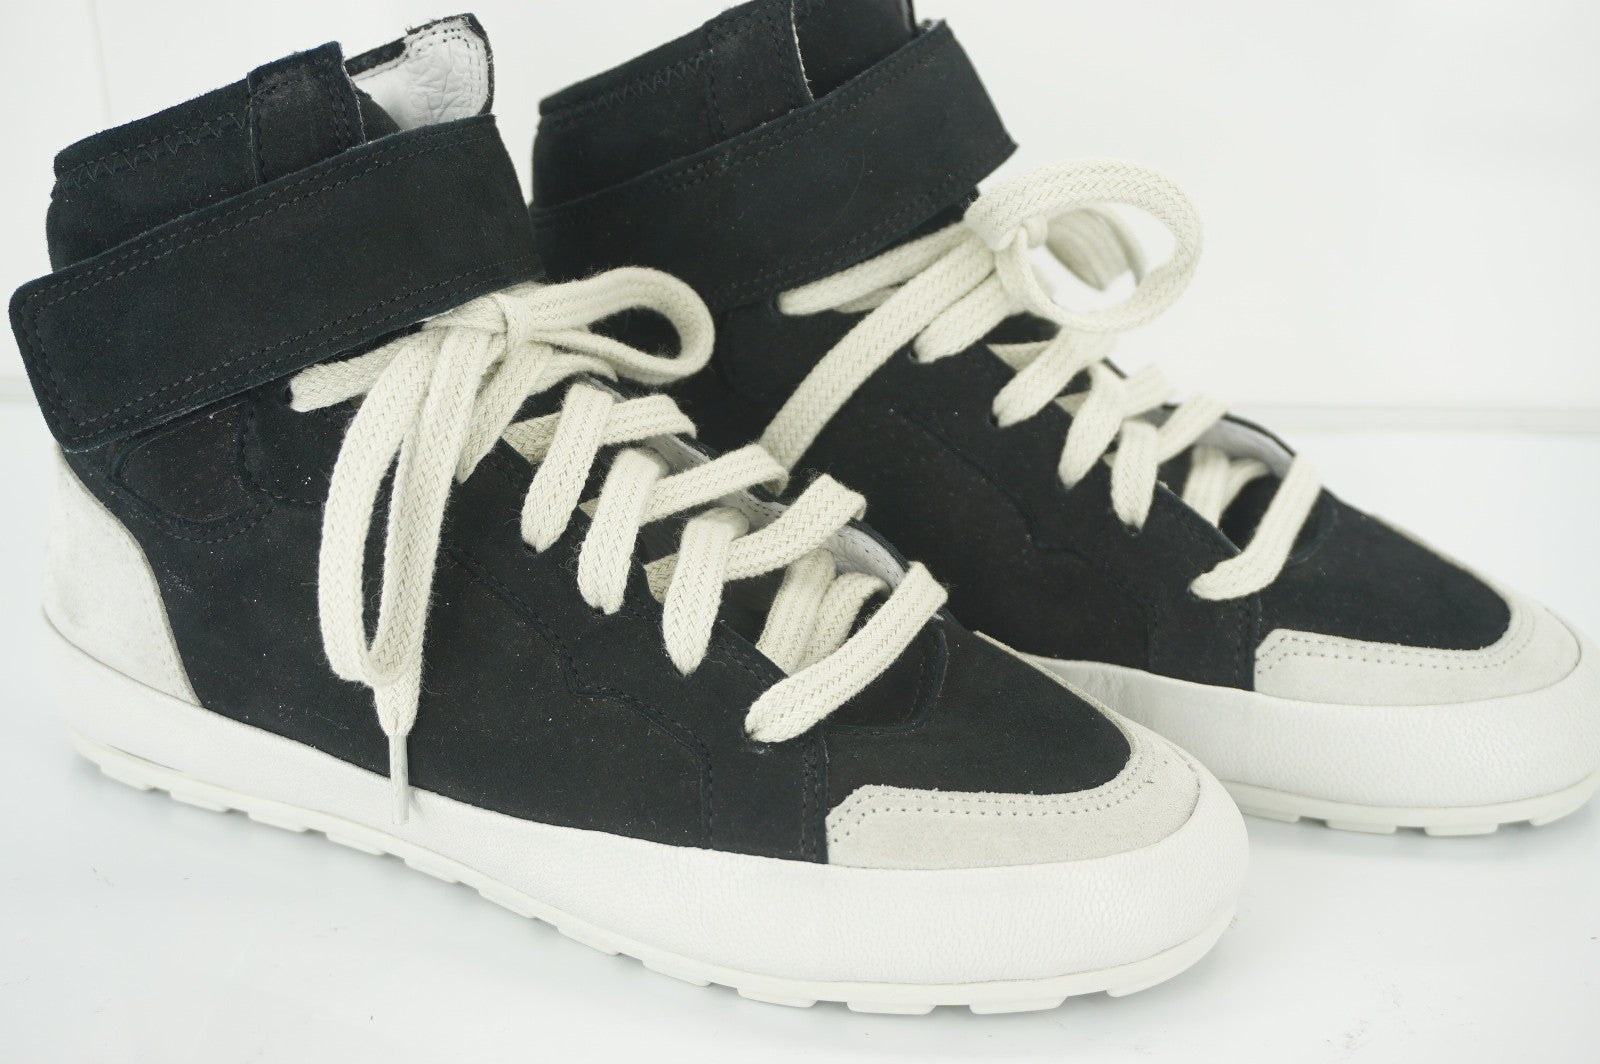 Isabel Marant Etoile Black Suede Bessy Hip Hop Hightop Sneakers Size 35 NIB $500